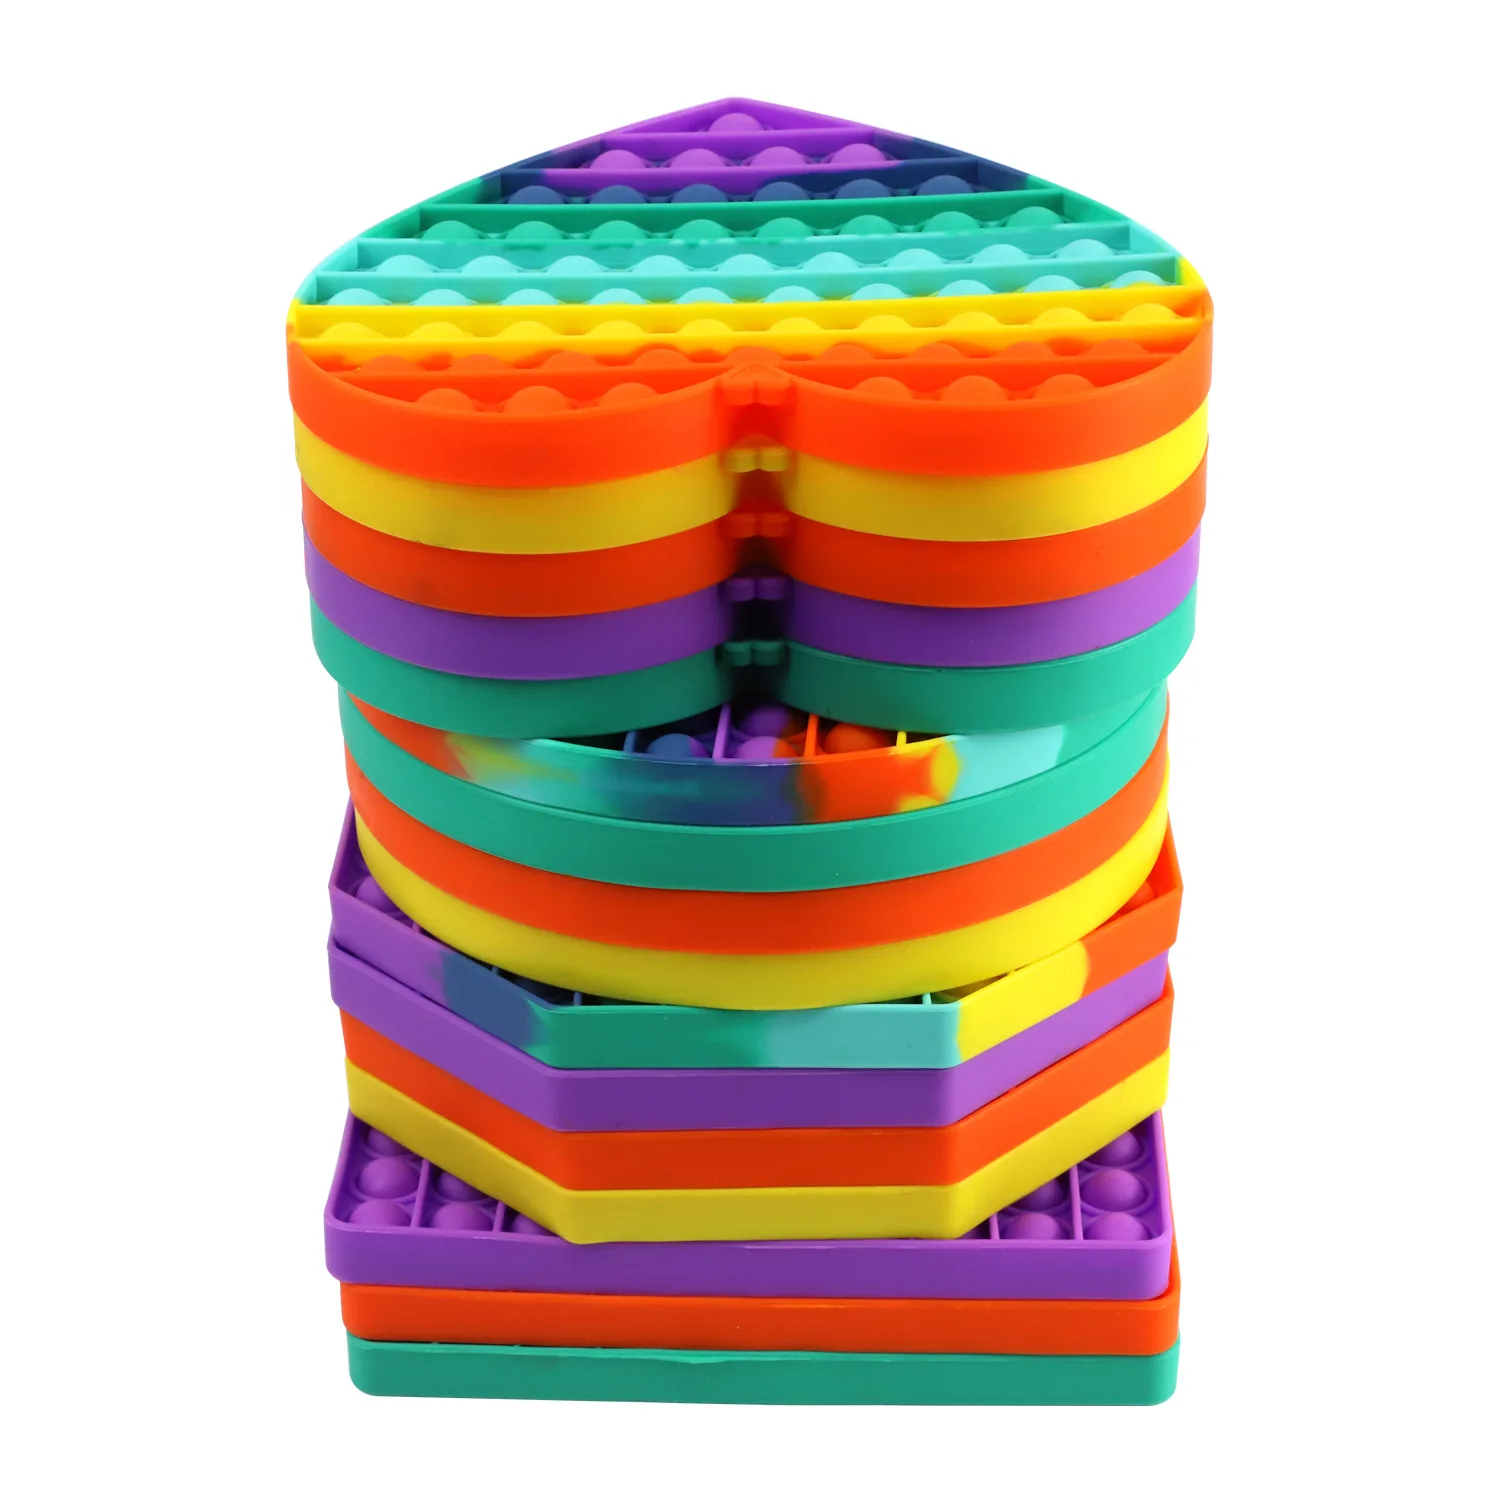 BIG SIZE Simple Dimple Fidget Toy Square Antistress Push Bubble Figet Sensory Squishy Jouet Pour Autiste For Adult Children Gift enlarge